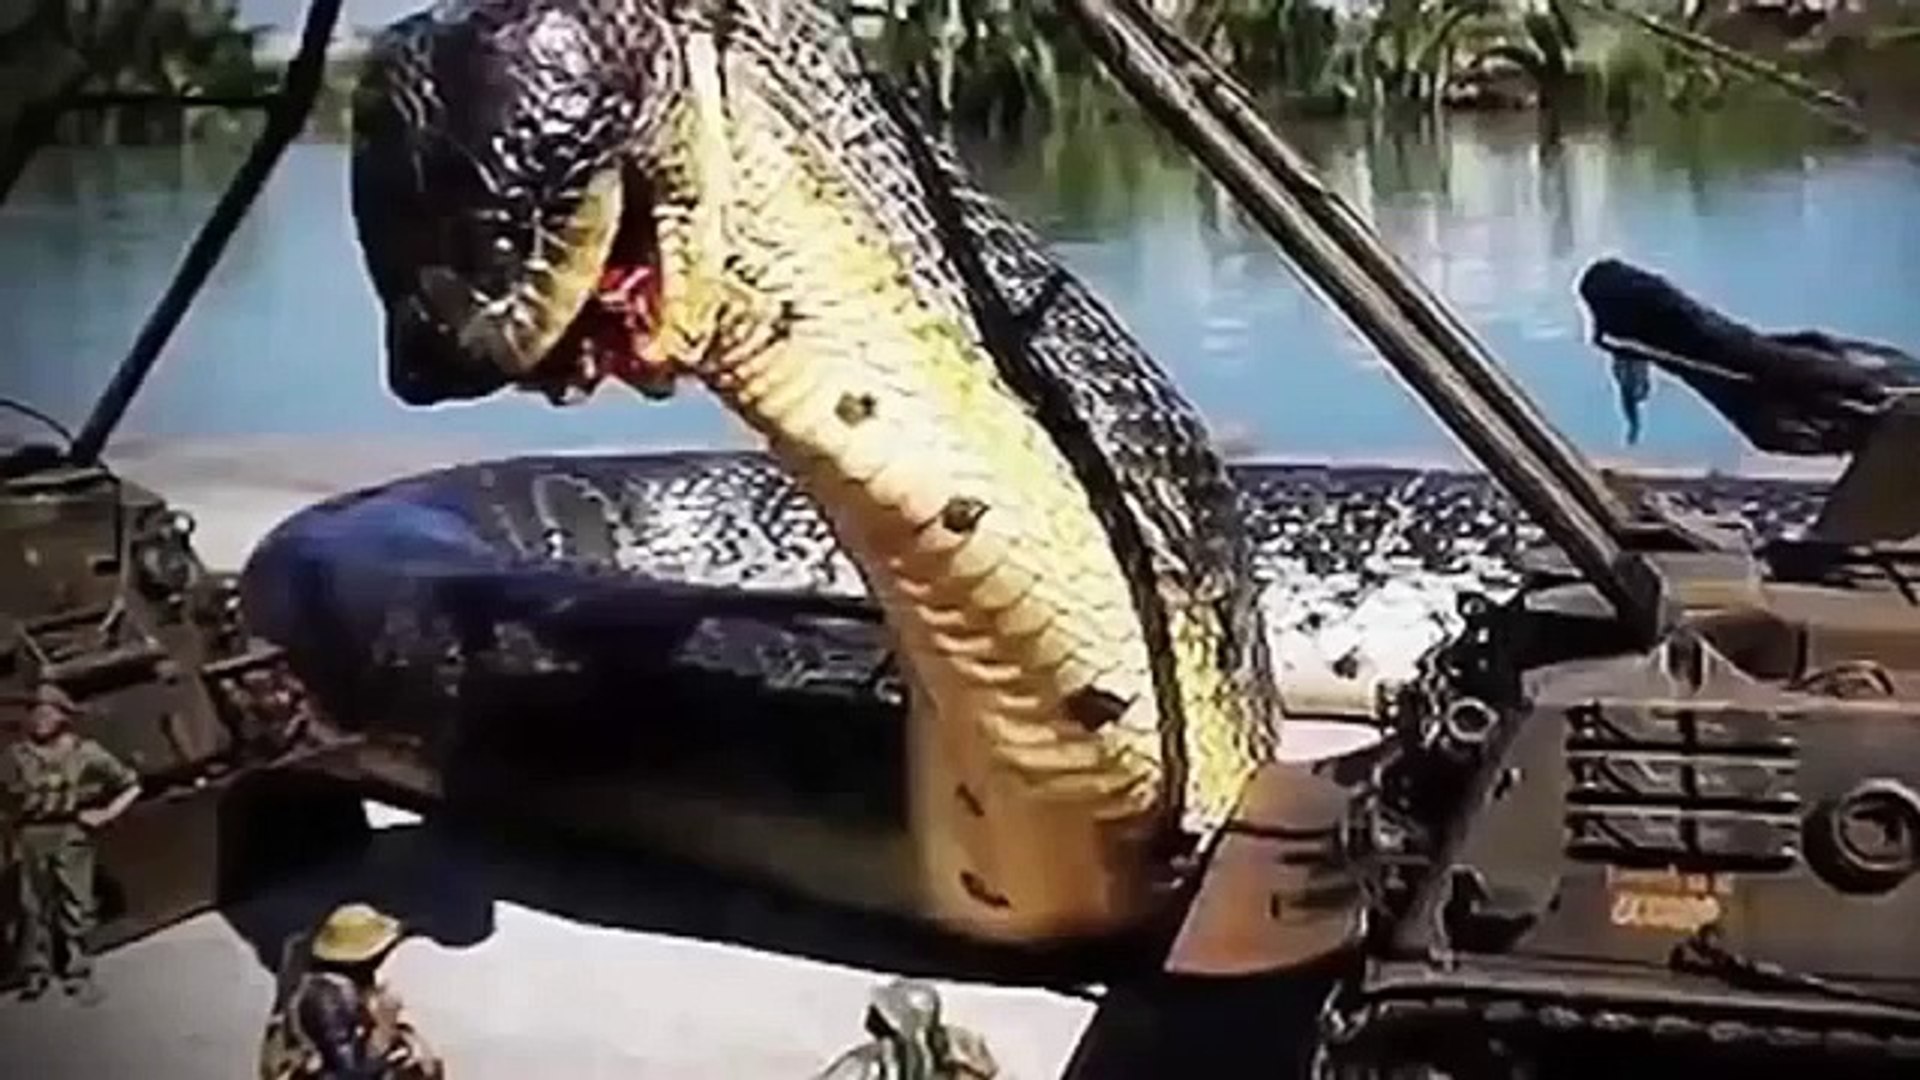 World Biggest Anaconda Size